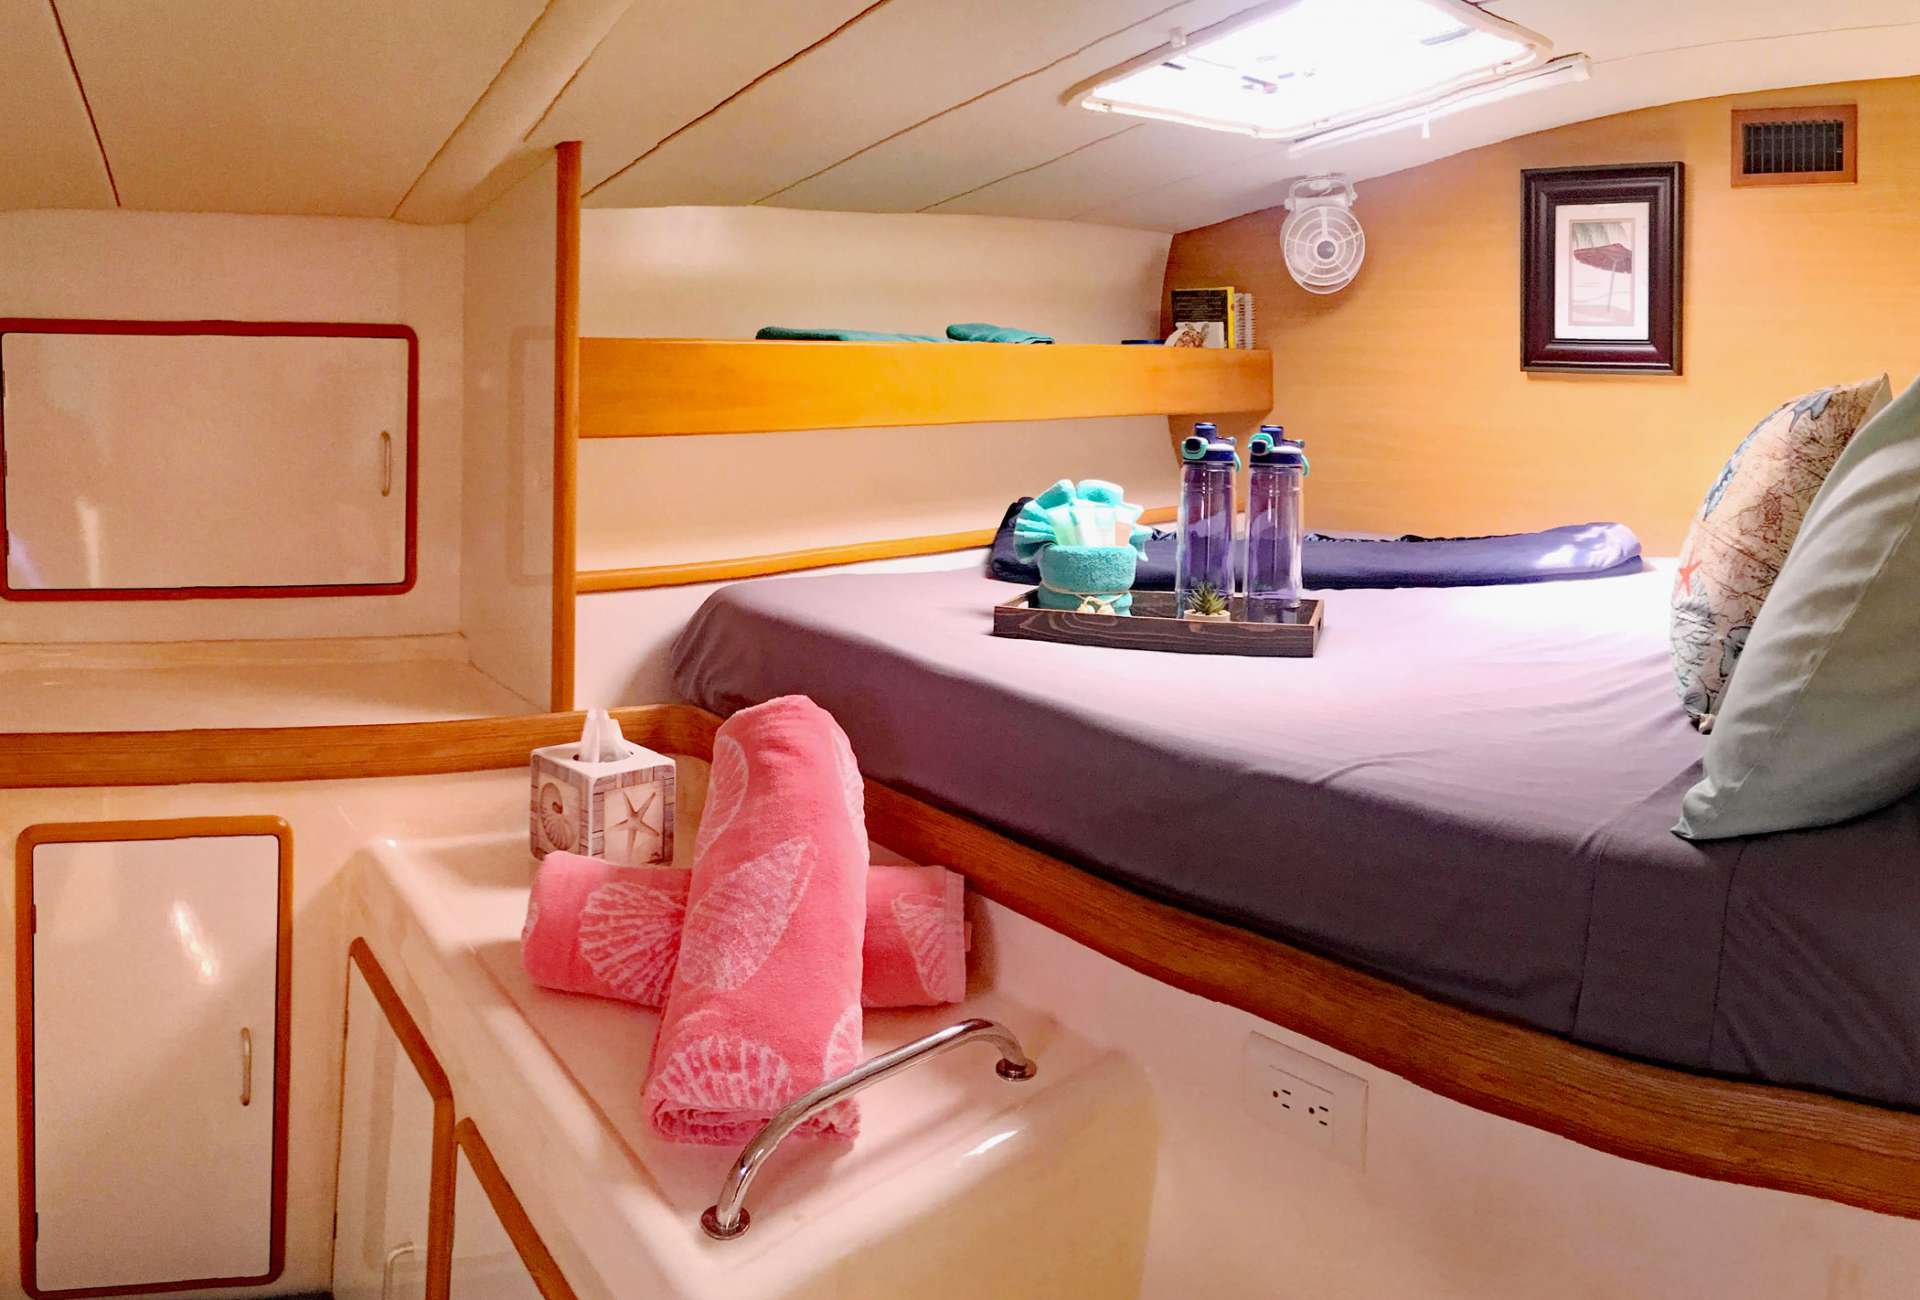 KUMA TOO Yacht Charter - Guest cabin